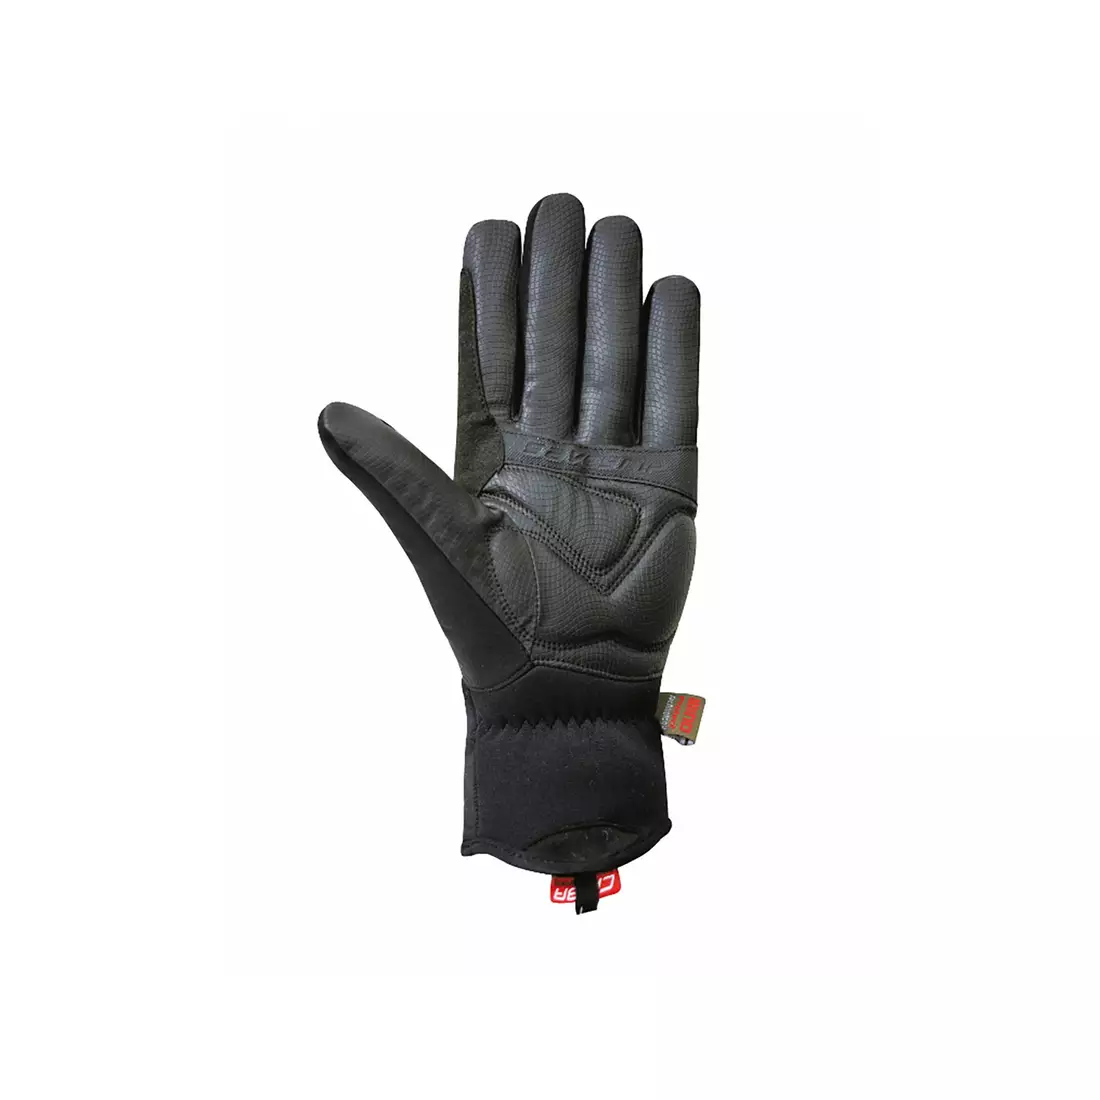 CHIBA EXPRESS+ zimné cyklistické rukavice 31176 - čierne